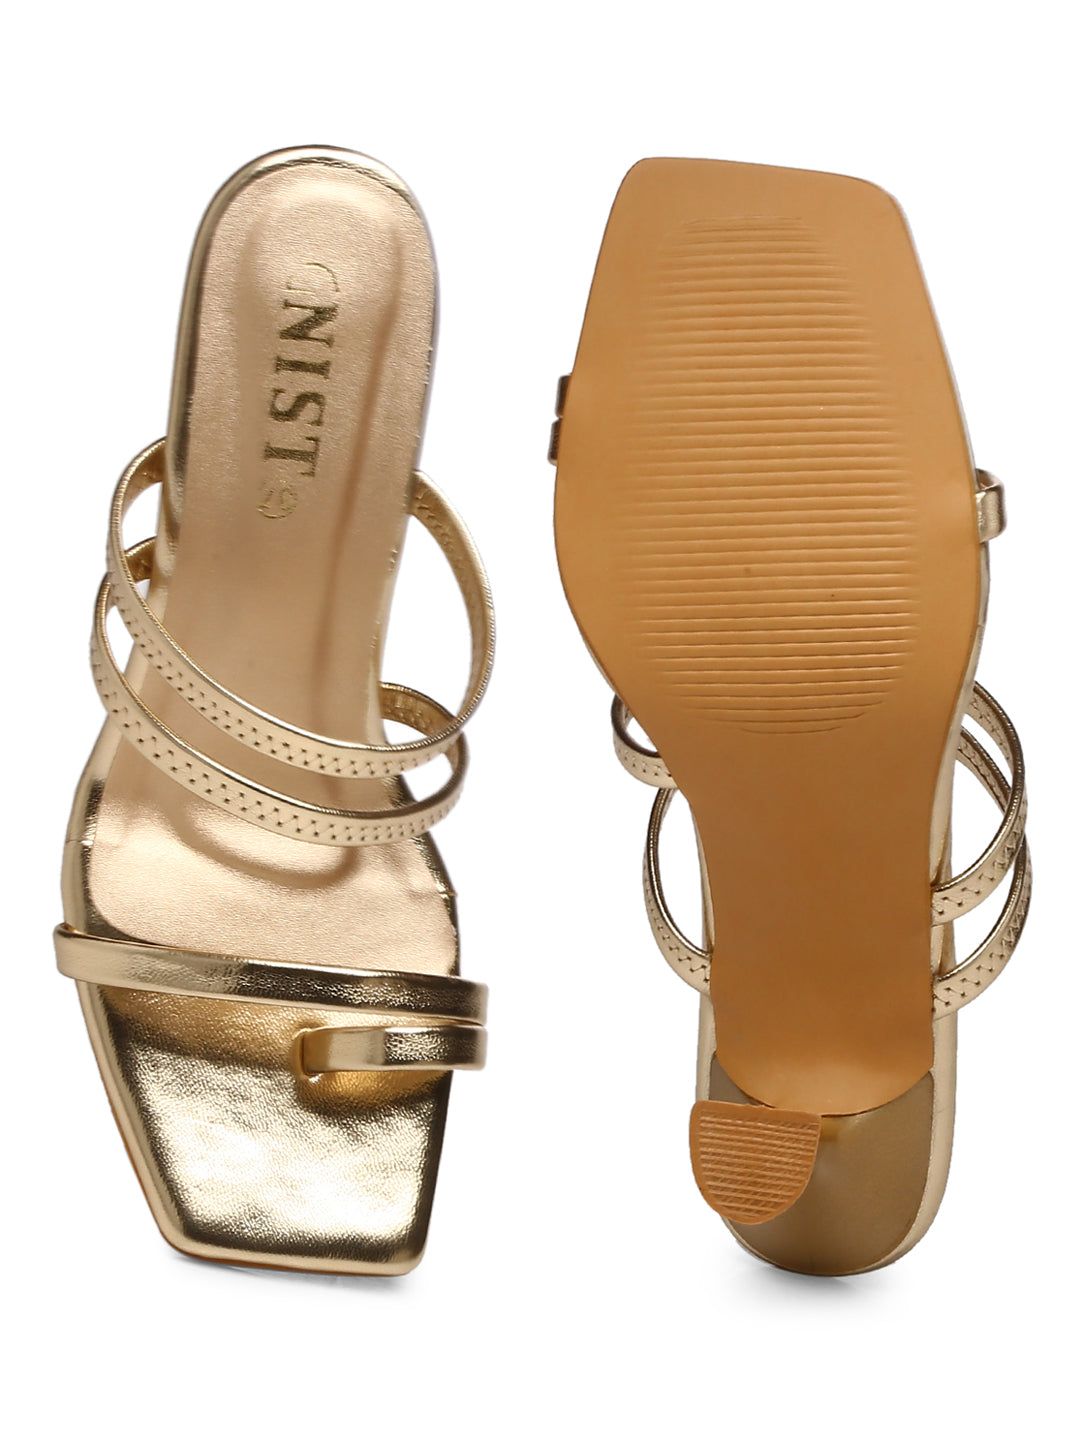 GNIST Gold Multi Strap Stilettos Heel